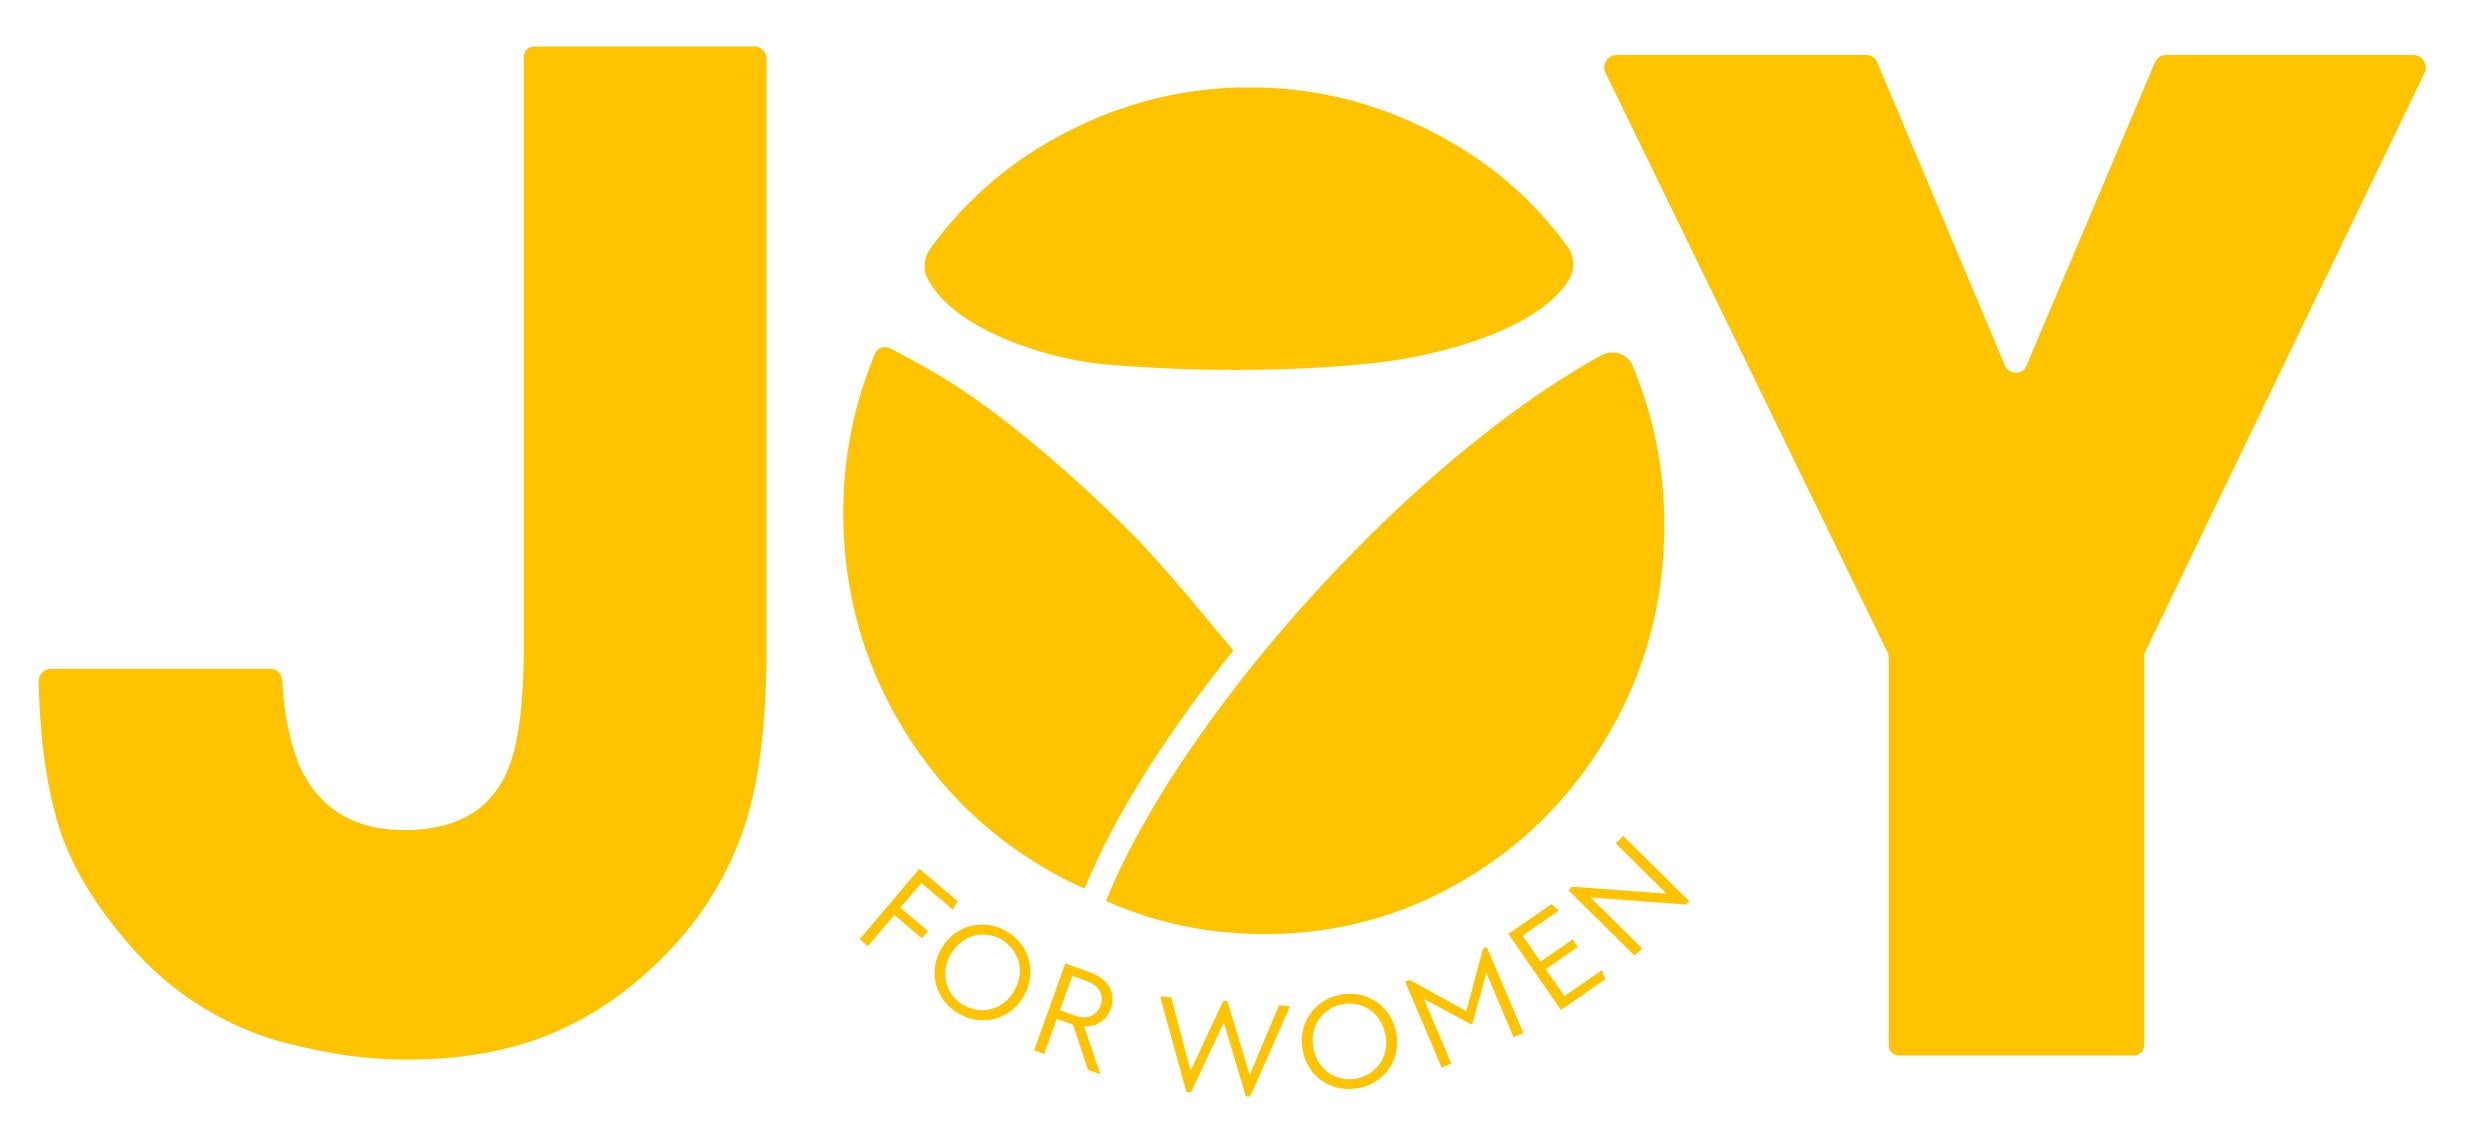 JOY FOR WOMEN